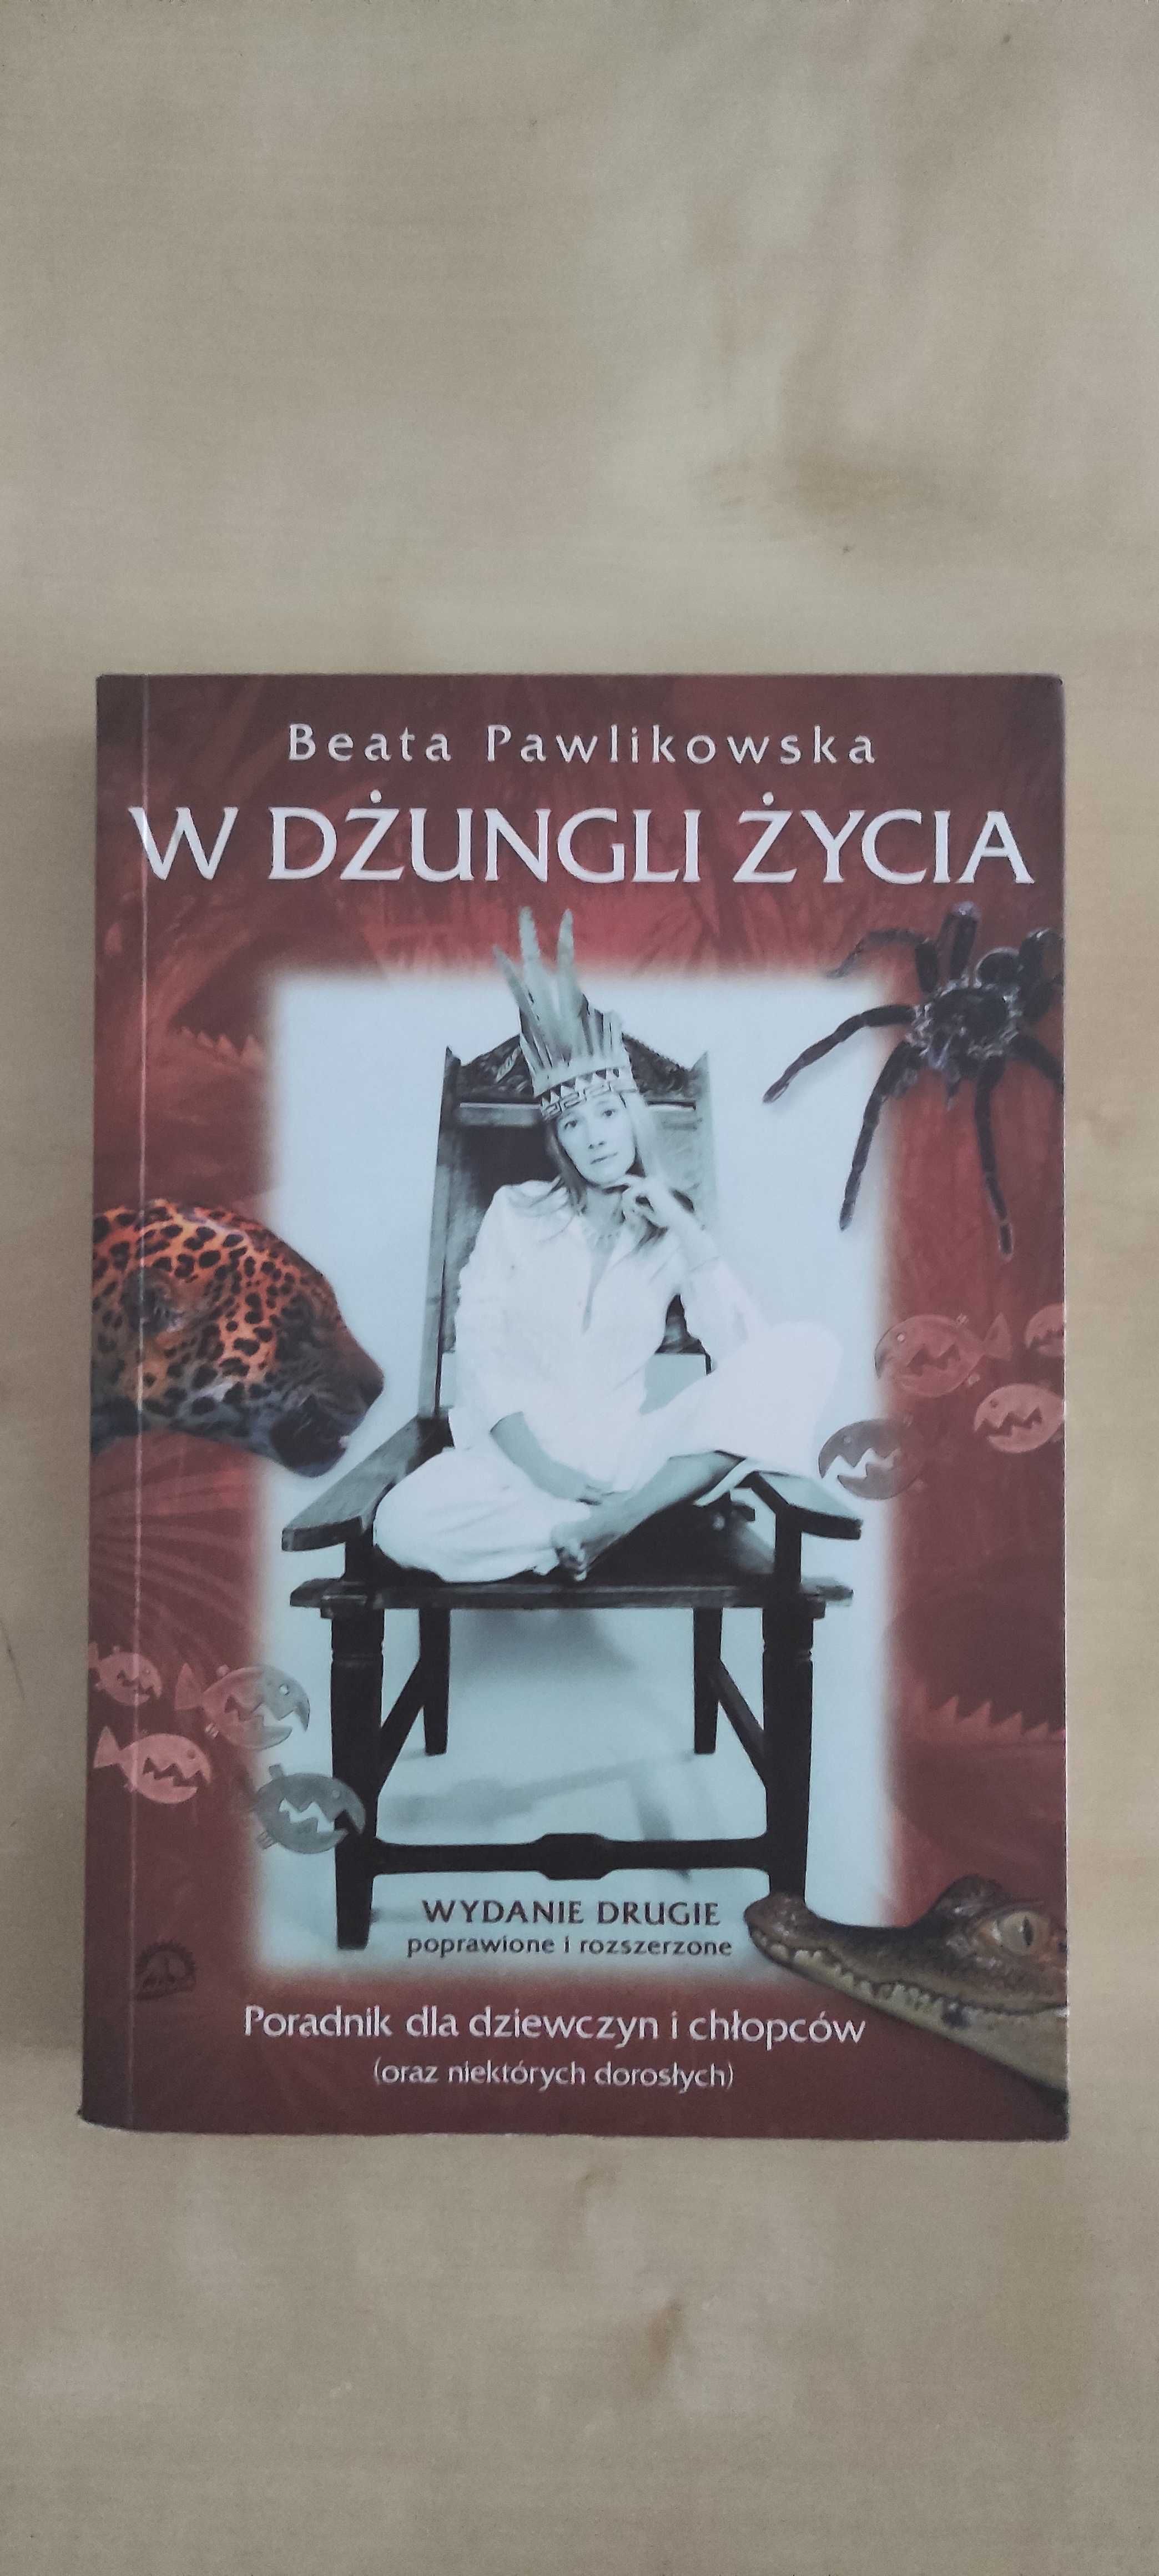 Książka: W dżungli życia, Beata Pawlikowska - nowa